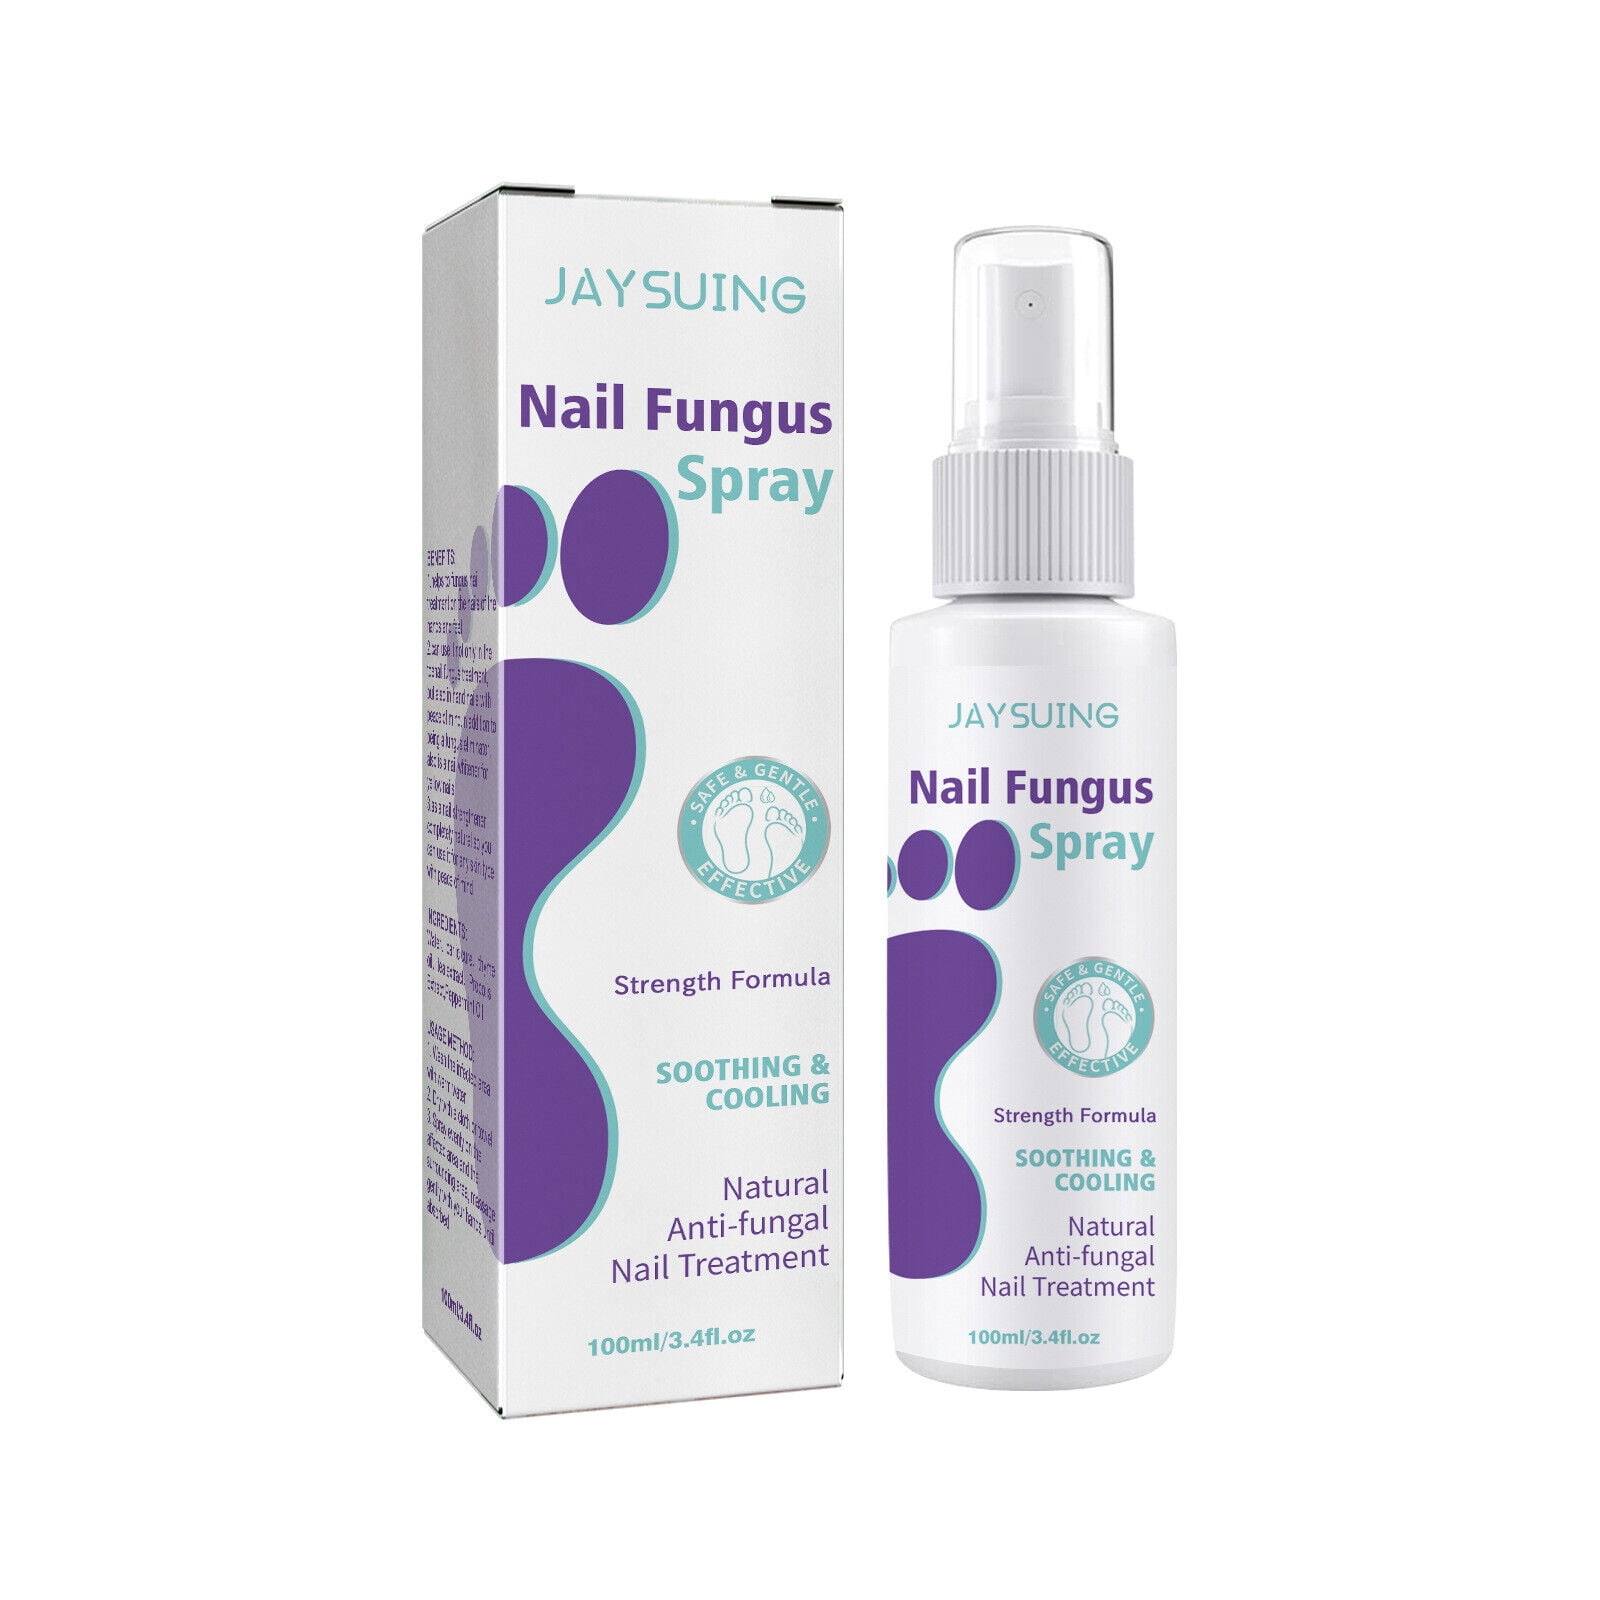 Fungus Spray Advanced Foot and Nail Spray Nail Fungus Treatment for Toenail and Nail Strengthener 540a2bd6 8c5a 49a8 a2aa 77d3be6dddca.c850bd543e6bfb286b15e5dcc854dc61